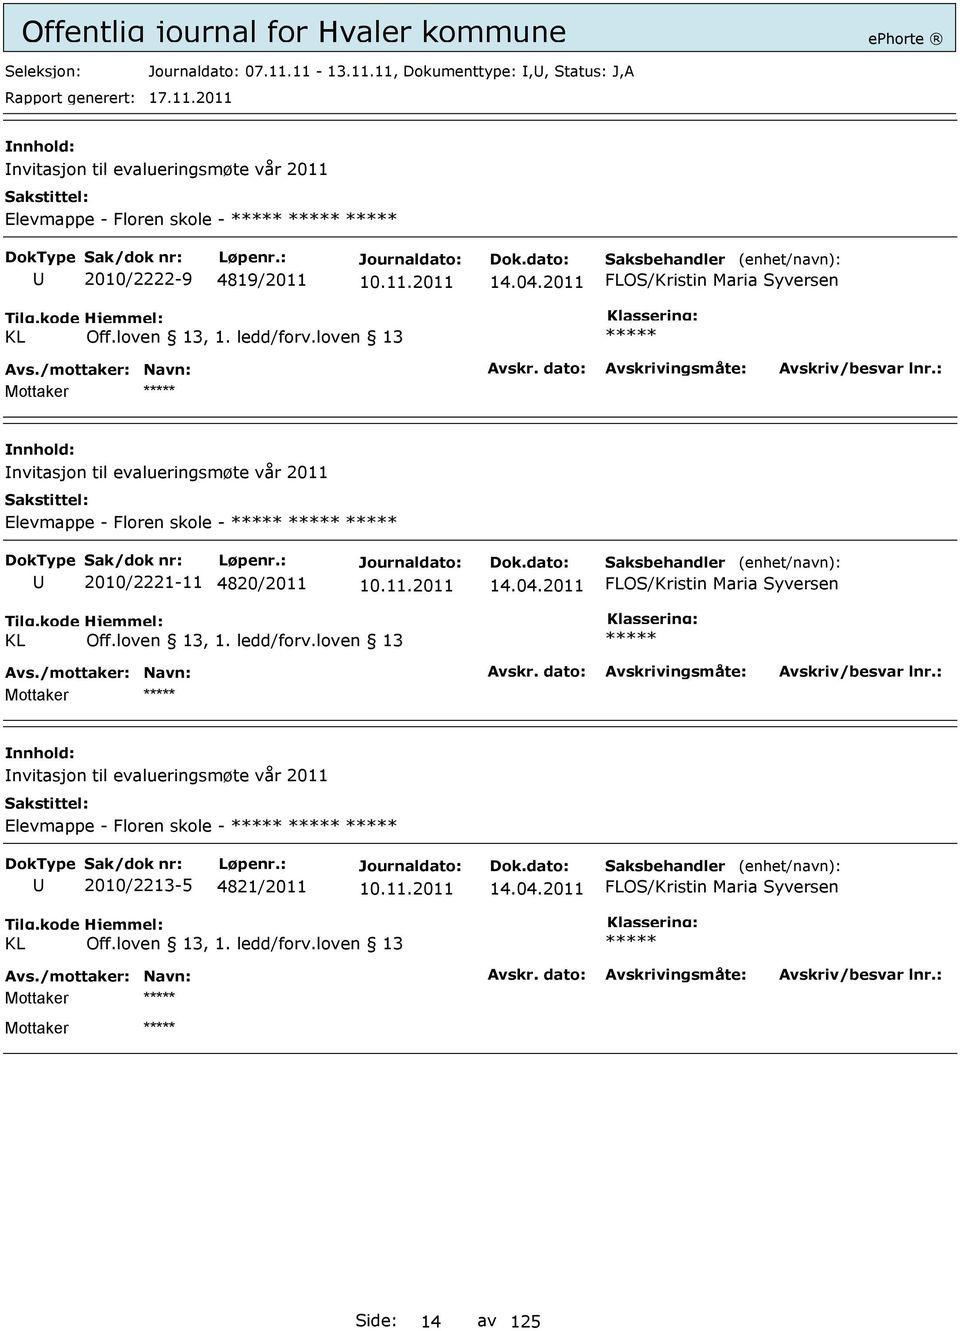 loven 13 nvitasjon til evalueringsmøte vår 2011 Elevmappe - Floren skole - 2010/2221-11 4820/2011 14.04.